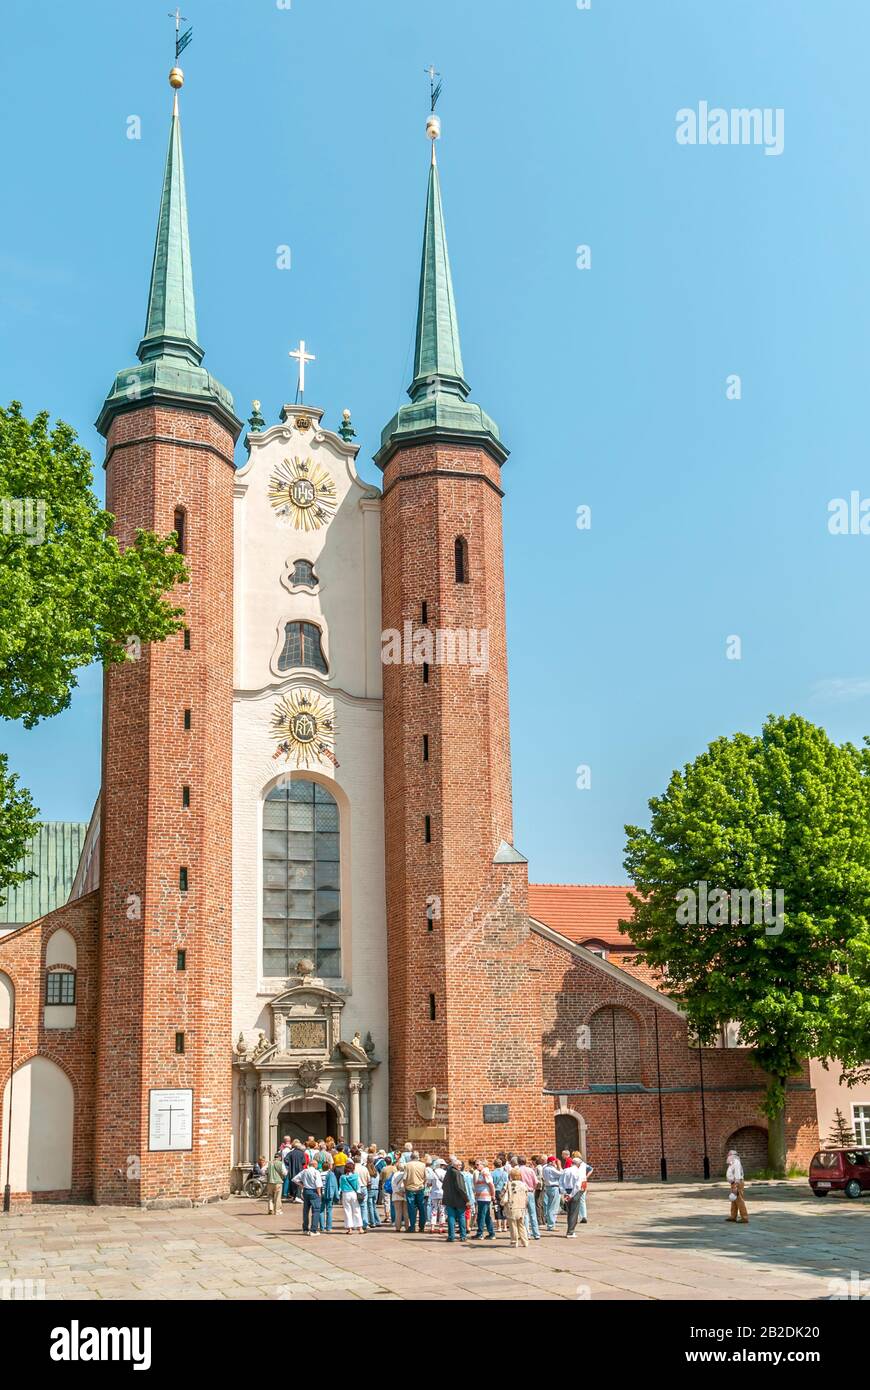 Die Kathedrale von Oliwa im Bezirk Oliwa in Danzig, Polen Stockfoto